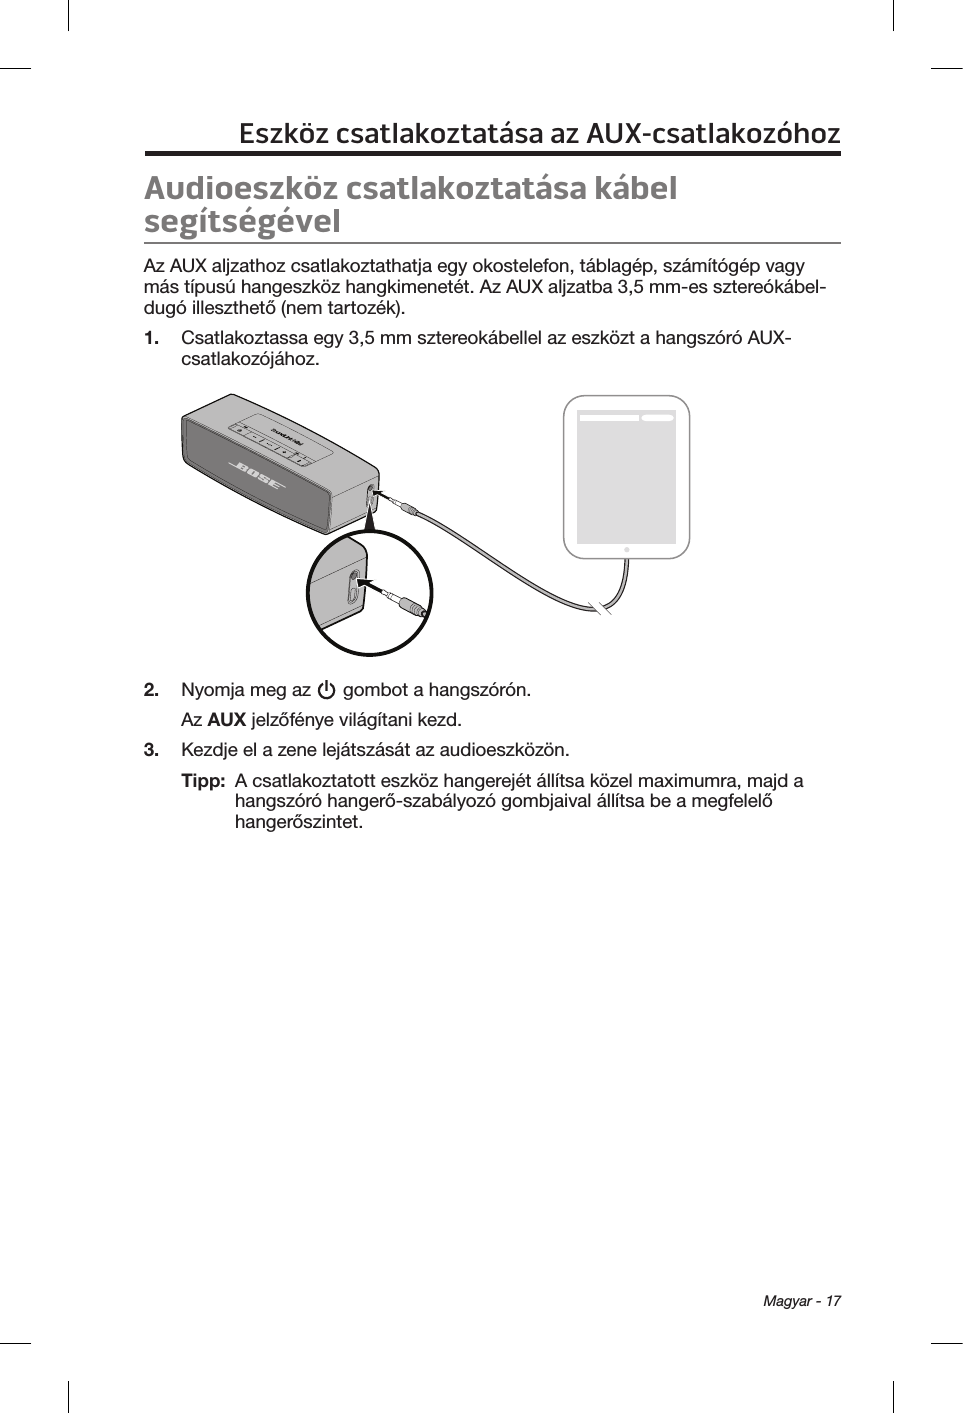  Magyar - 17Eszköz csatlakoztatása az AUX-csatlakozóhozAudioeszköz csatlakoztatása kábel segítségévelAz AUX aljzathoz csatlakoztathatja egy okostelefon, táblagép, számítógép vagy más típusú hangeszköz hangkimenetét. Az AUX aljzatba 3,5 mm-es sztereókábel-dugó illeszthető (nem tartozék).1.  Csatlakoztassa egy 3,5 mm sztereokábellel az eszközt a hangszóró AUX-csatlakozójához.2.  Nyomja meg az   gombot a hangszórón.Az AUX jelzőfénye világítani kezd.3.  Kezdje el a zene lejátszását az audioeszközön.Tipp:   A csatlakoztatott eszköz hangerejét állítsa közel maximumra, majd a hangszóró hangerő-szabályozó gombjaival állítsa be a megfelelő hangerőszintet.